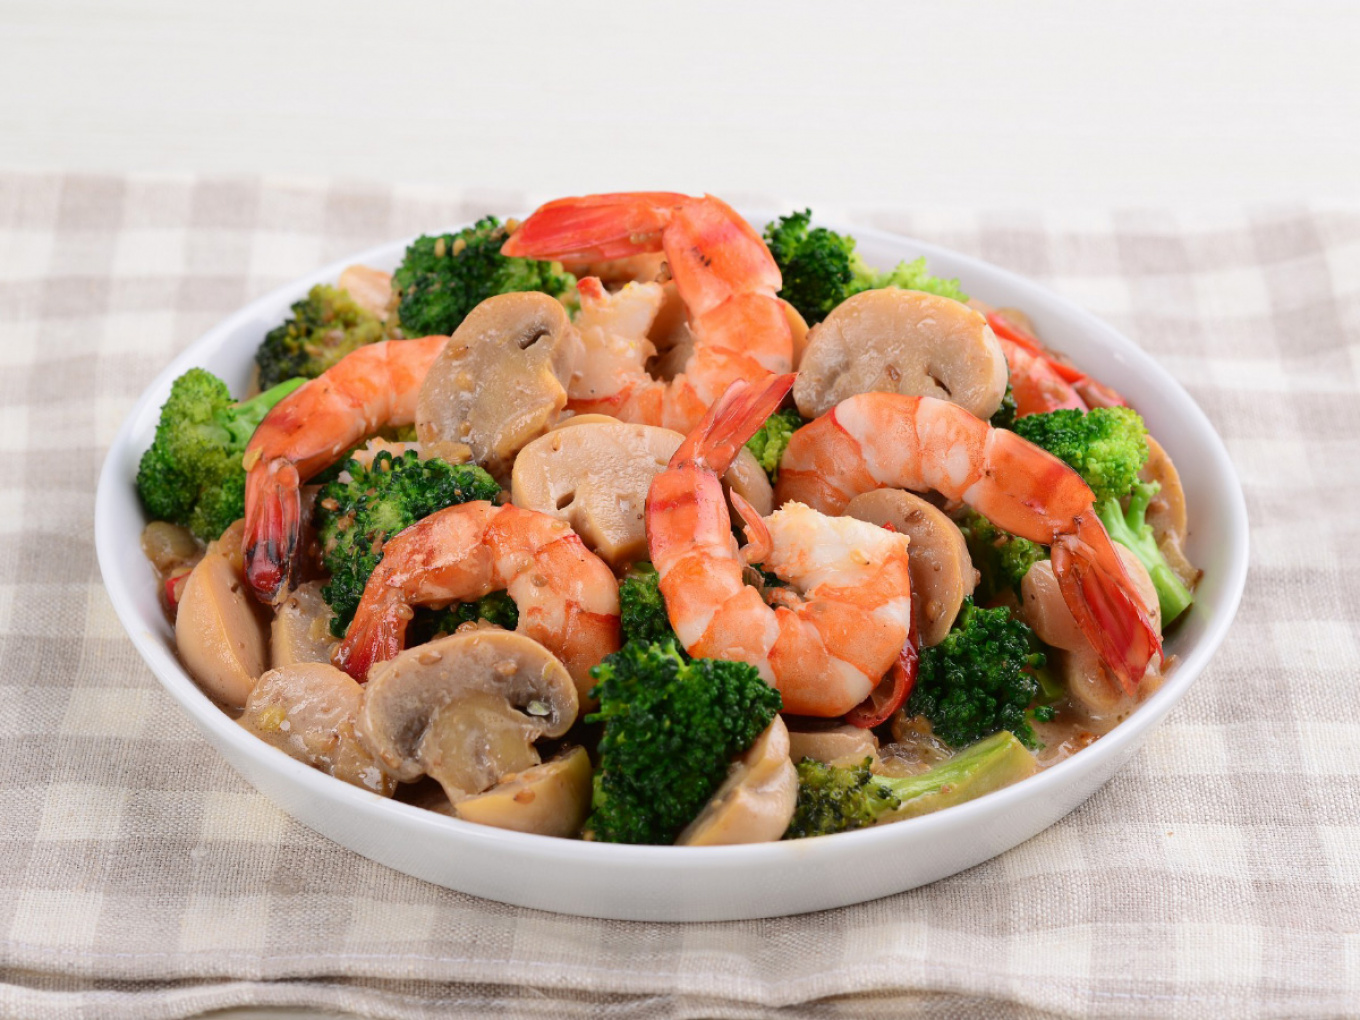 Broccoli and Shrimp Saute